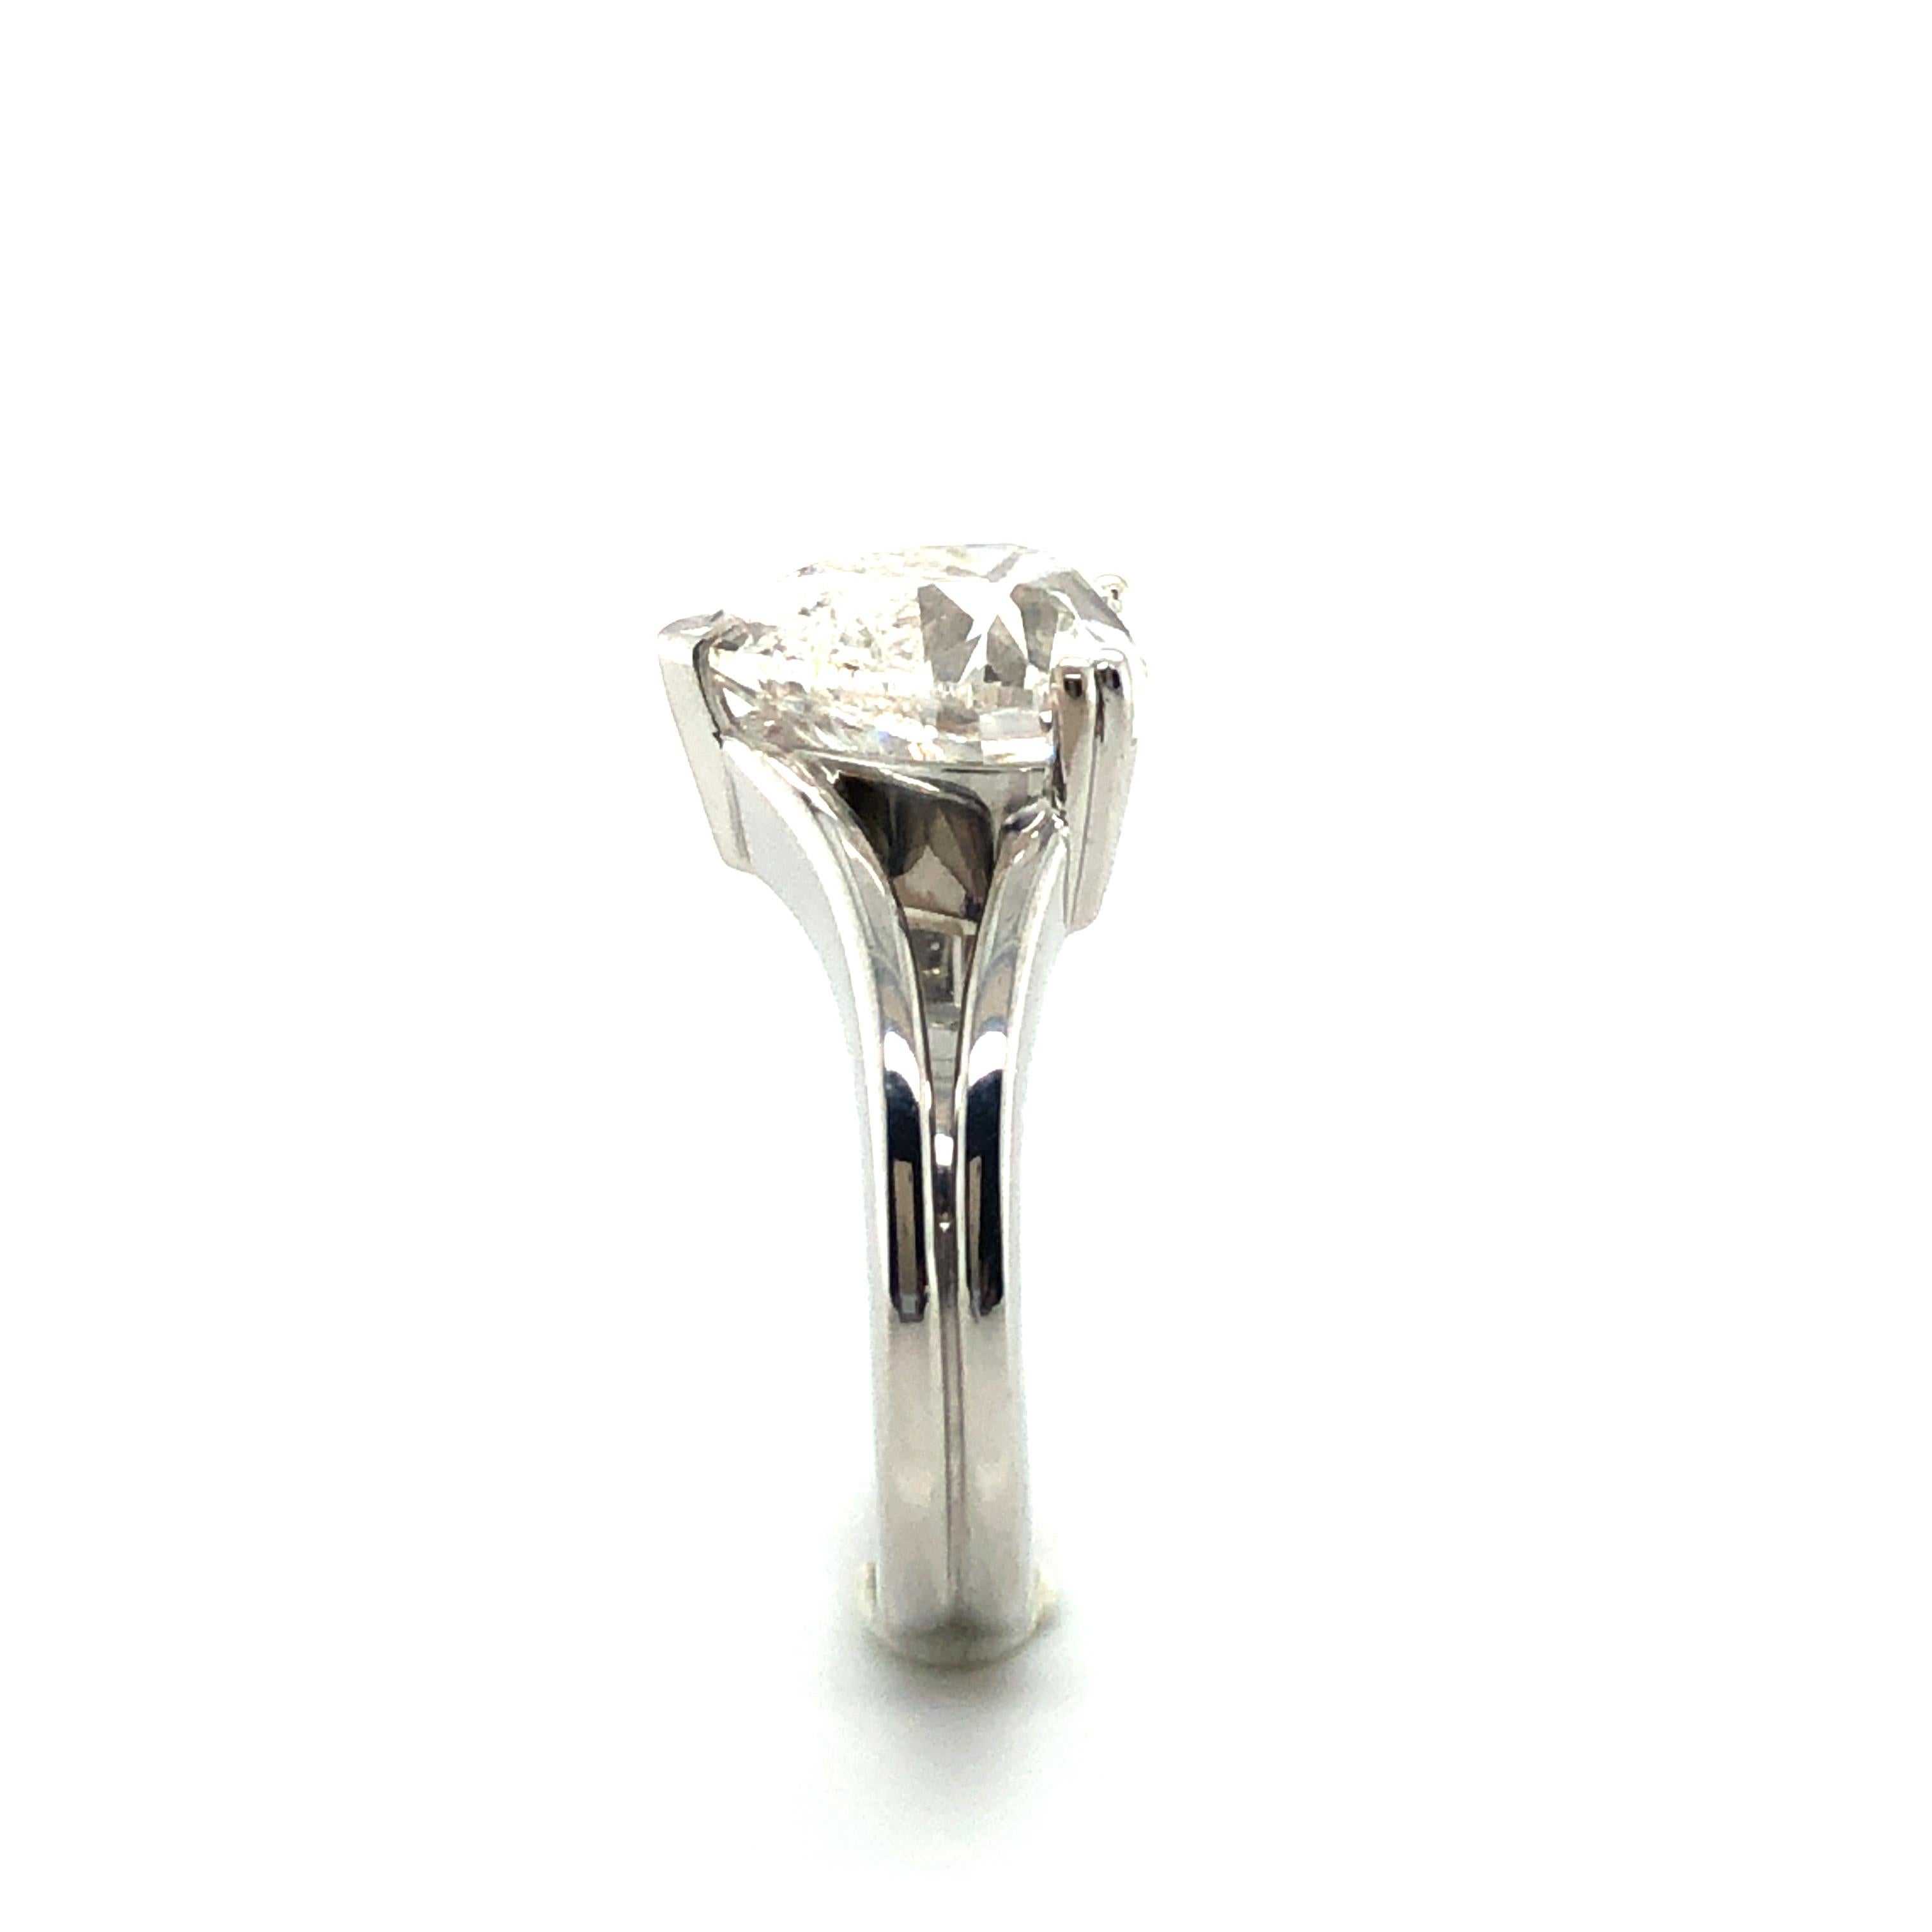 Women's or Men's GIA Certified 5.04 Carat Heart-Shaped Diamond Ring in 18 Karat White Gold